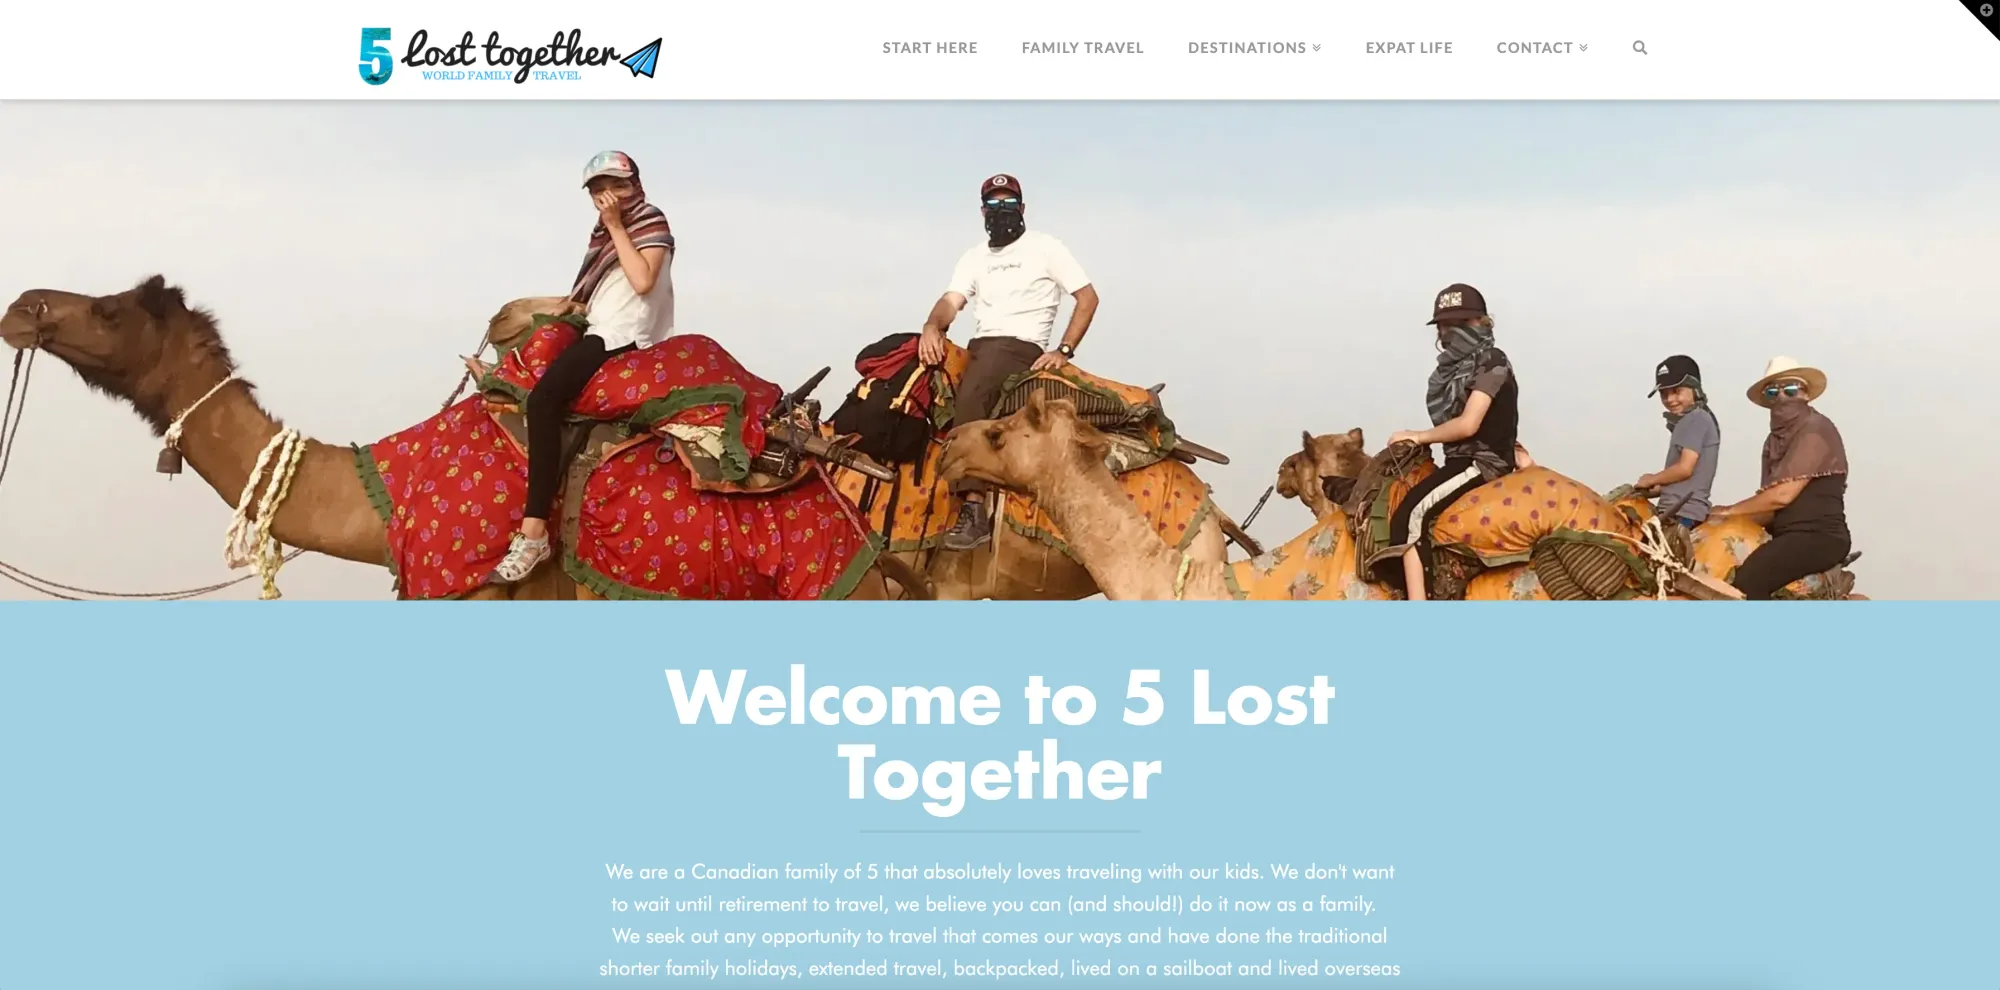 5 lost together, a digital nomad family blog